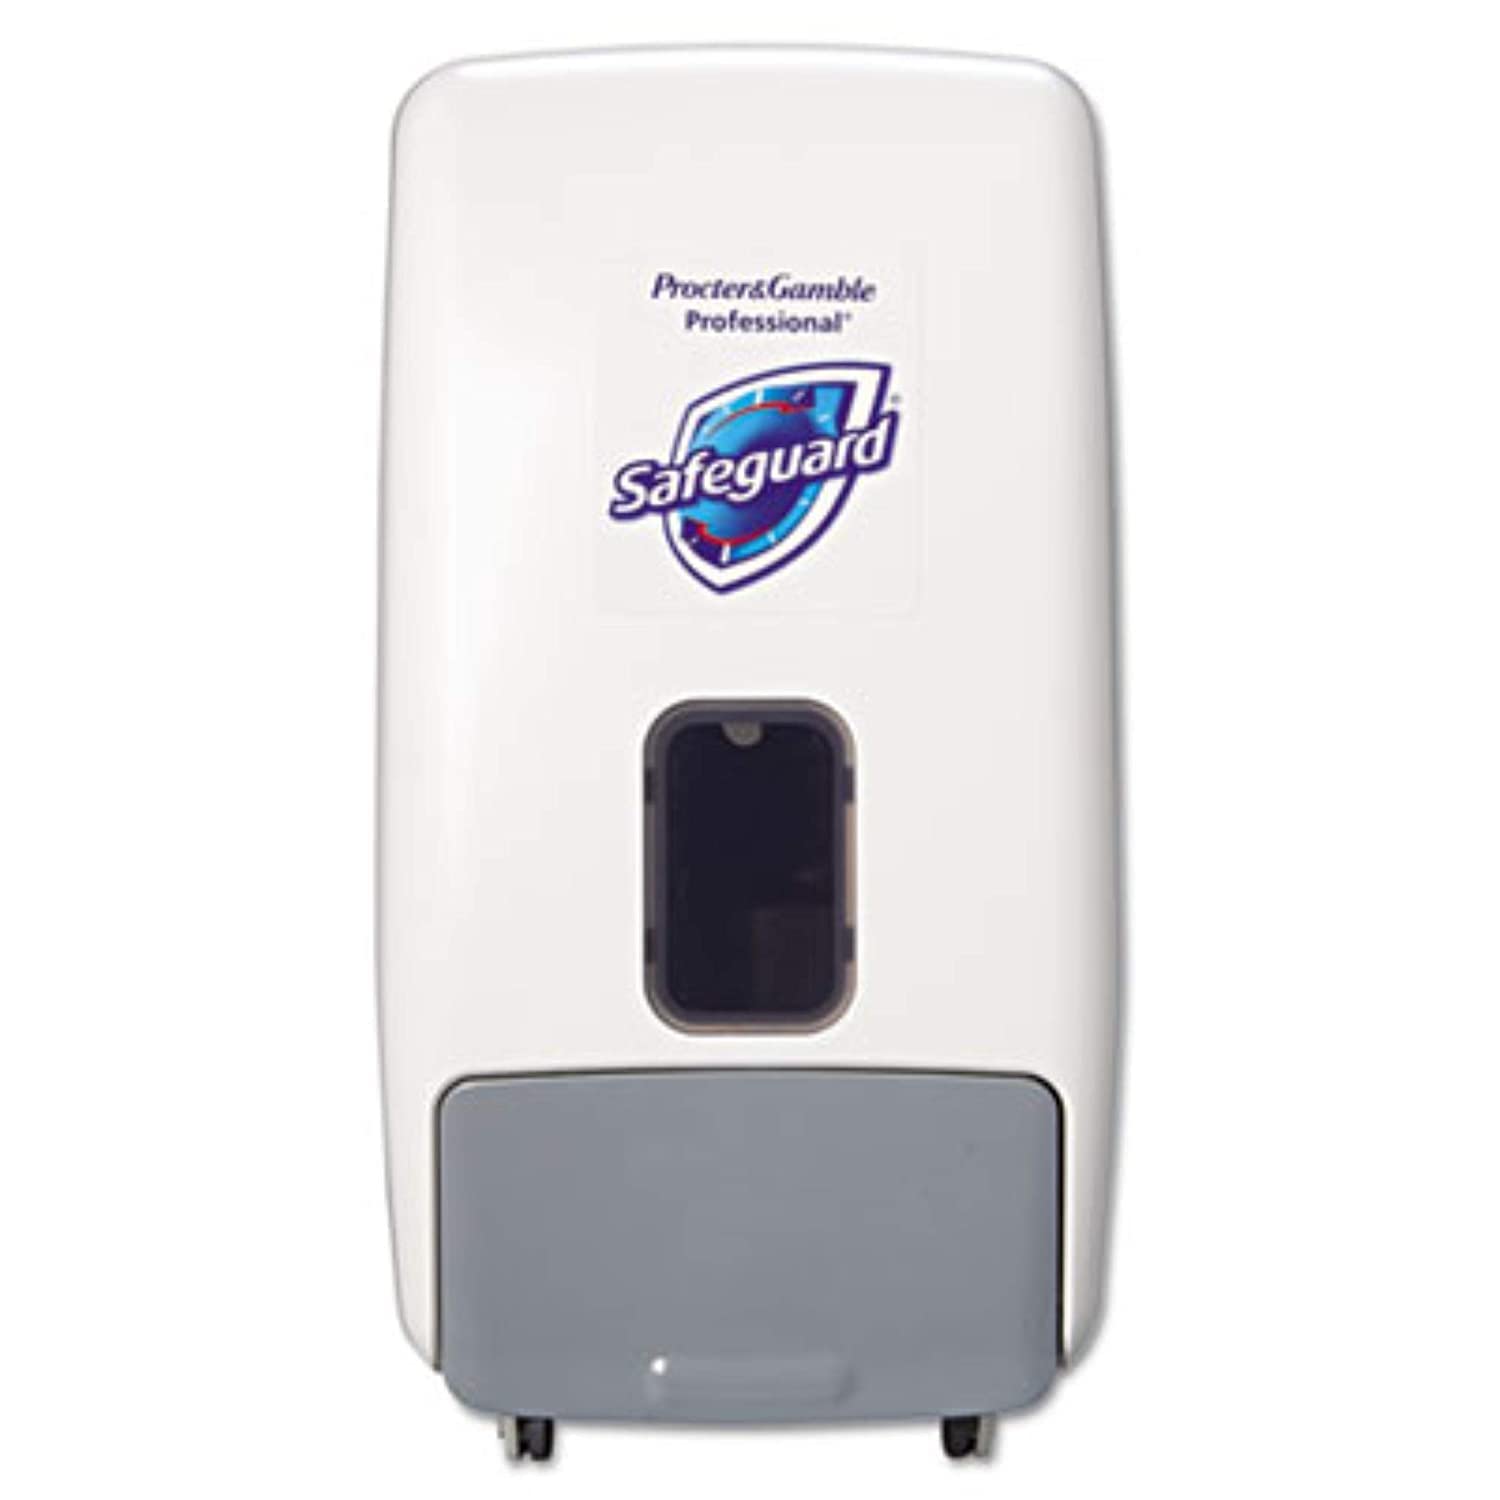 Safeguard™ Wall Mount Soap Dispenser